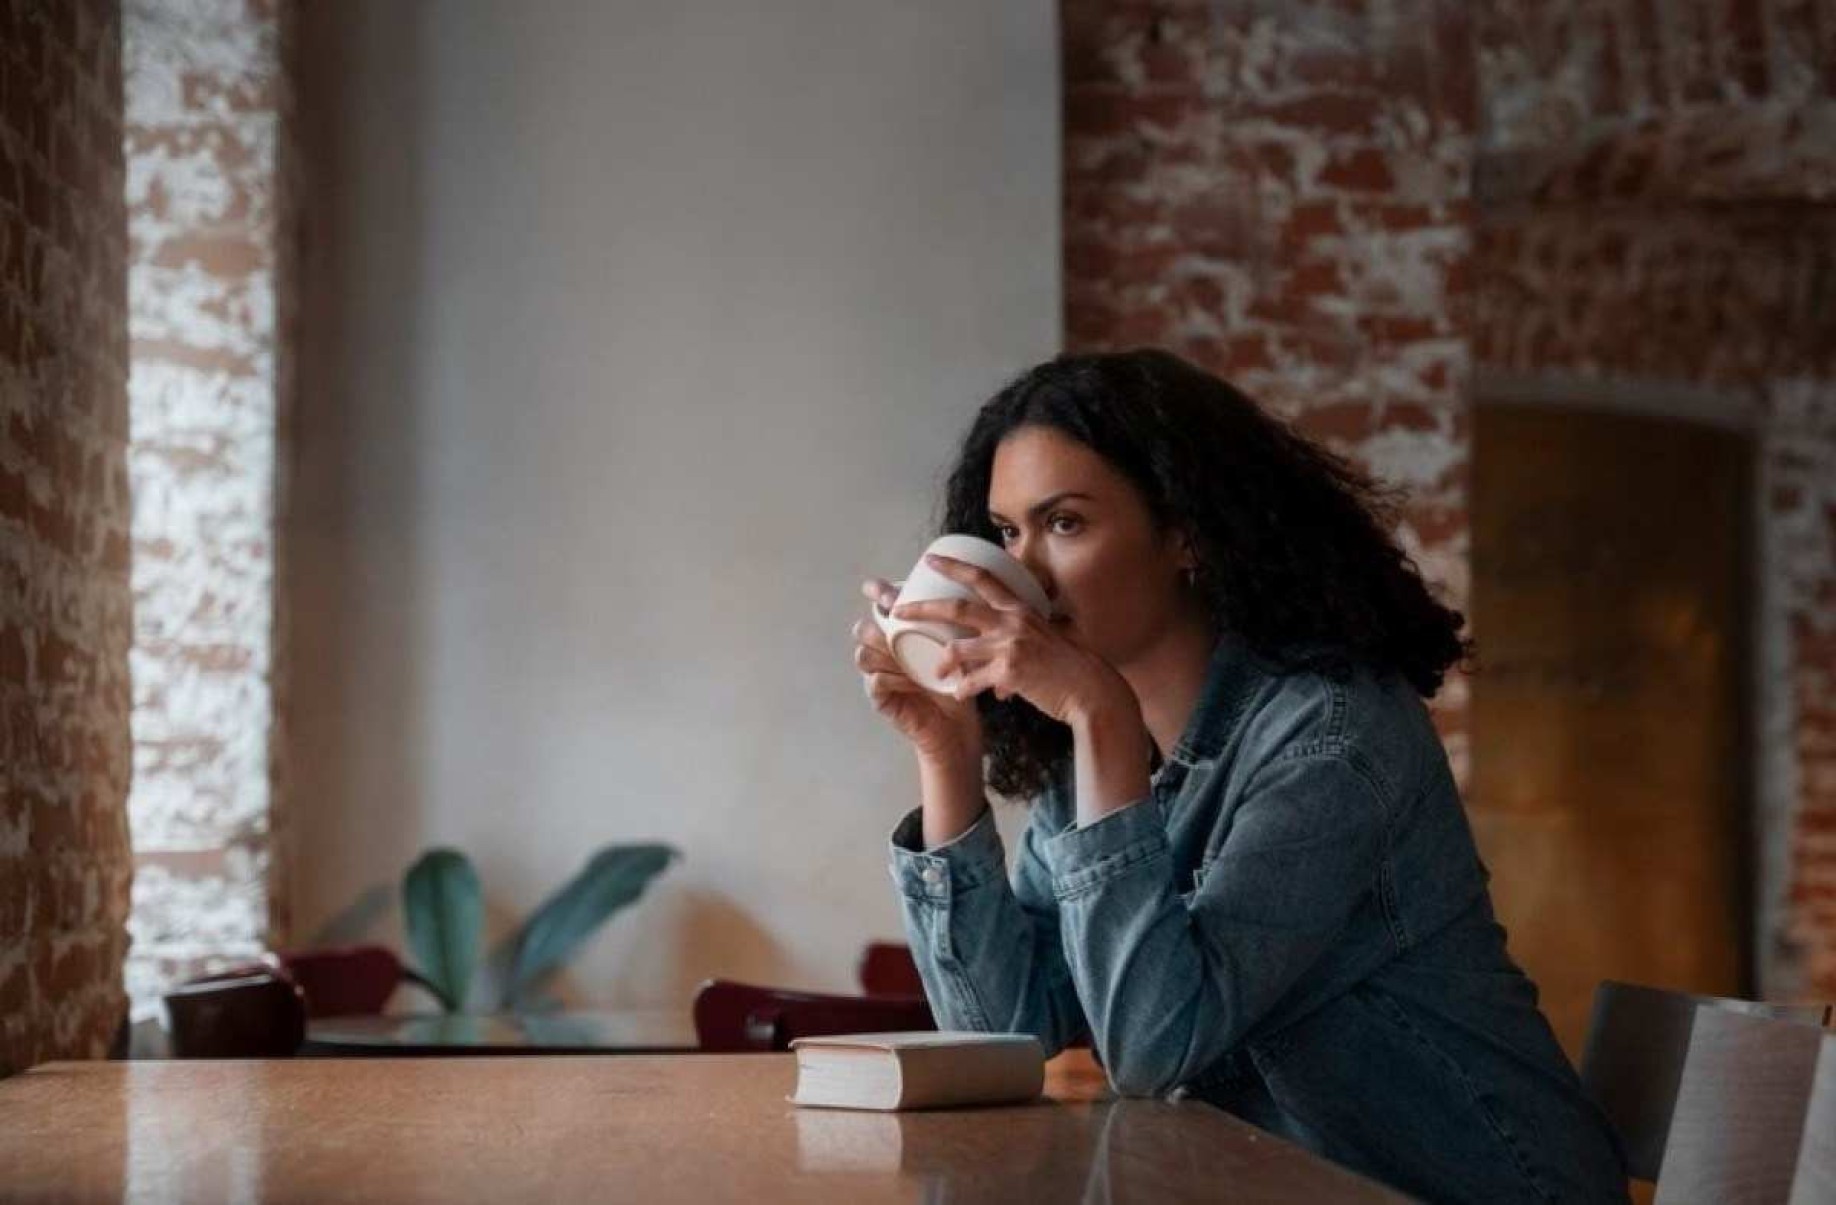 Café pode impactar negativamente no tratamento da endometriose